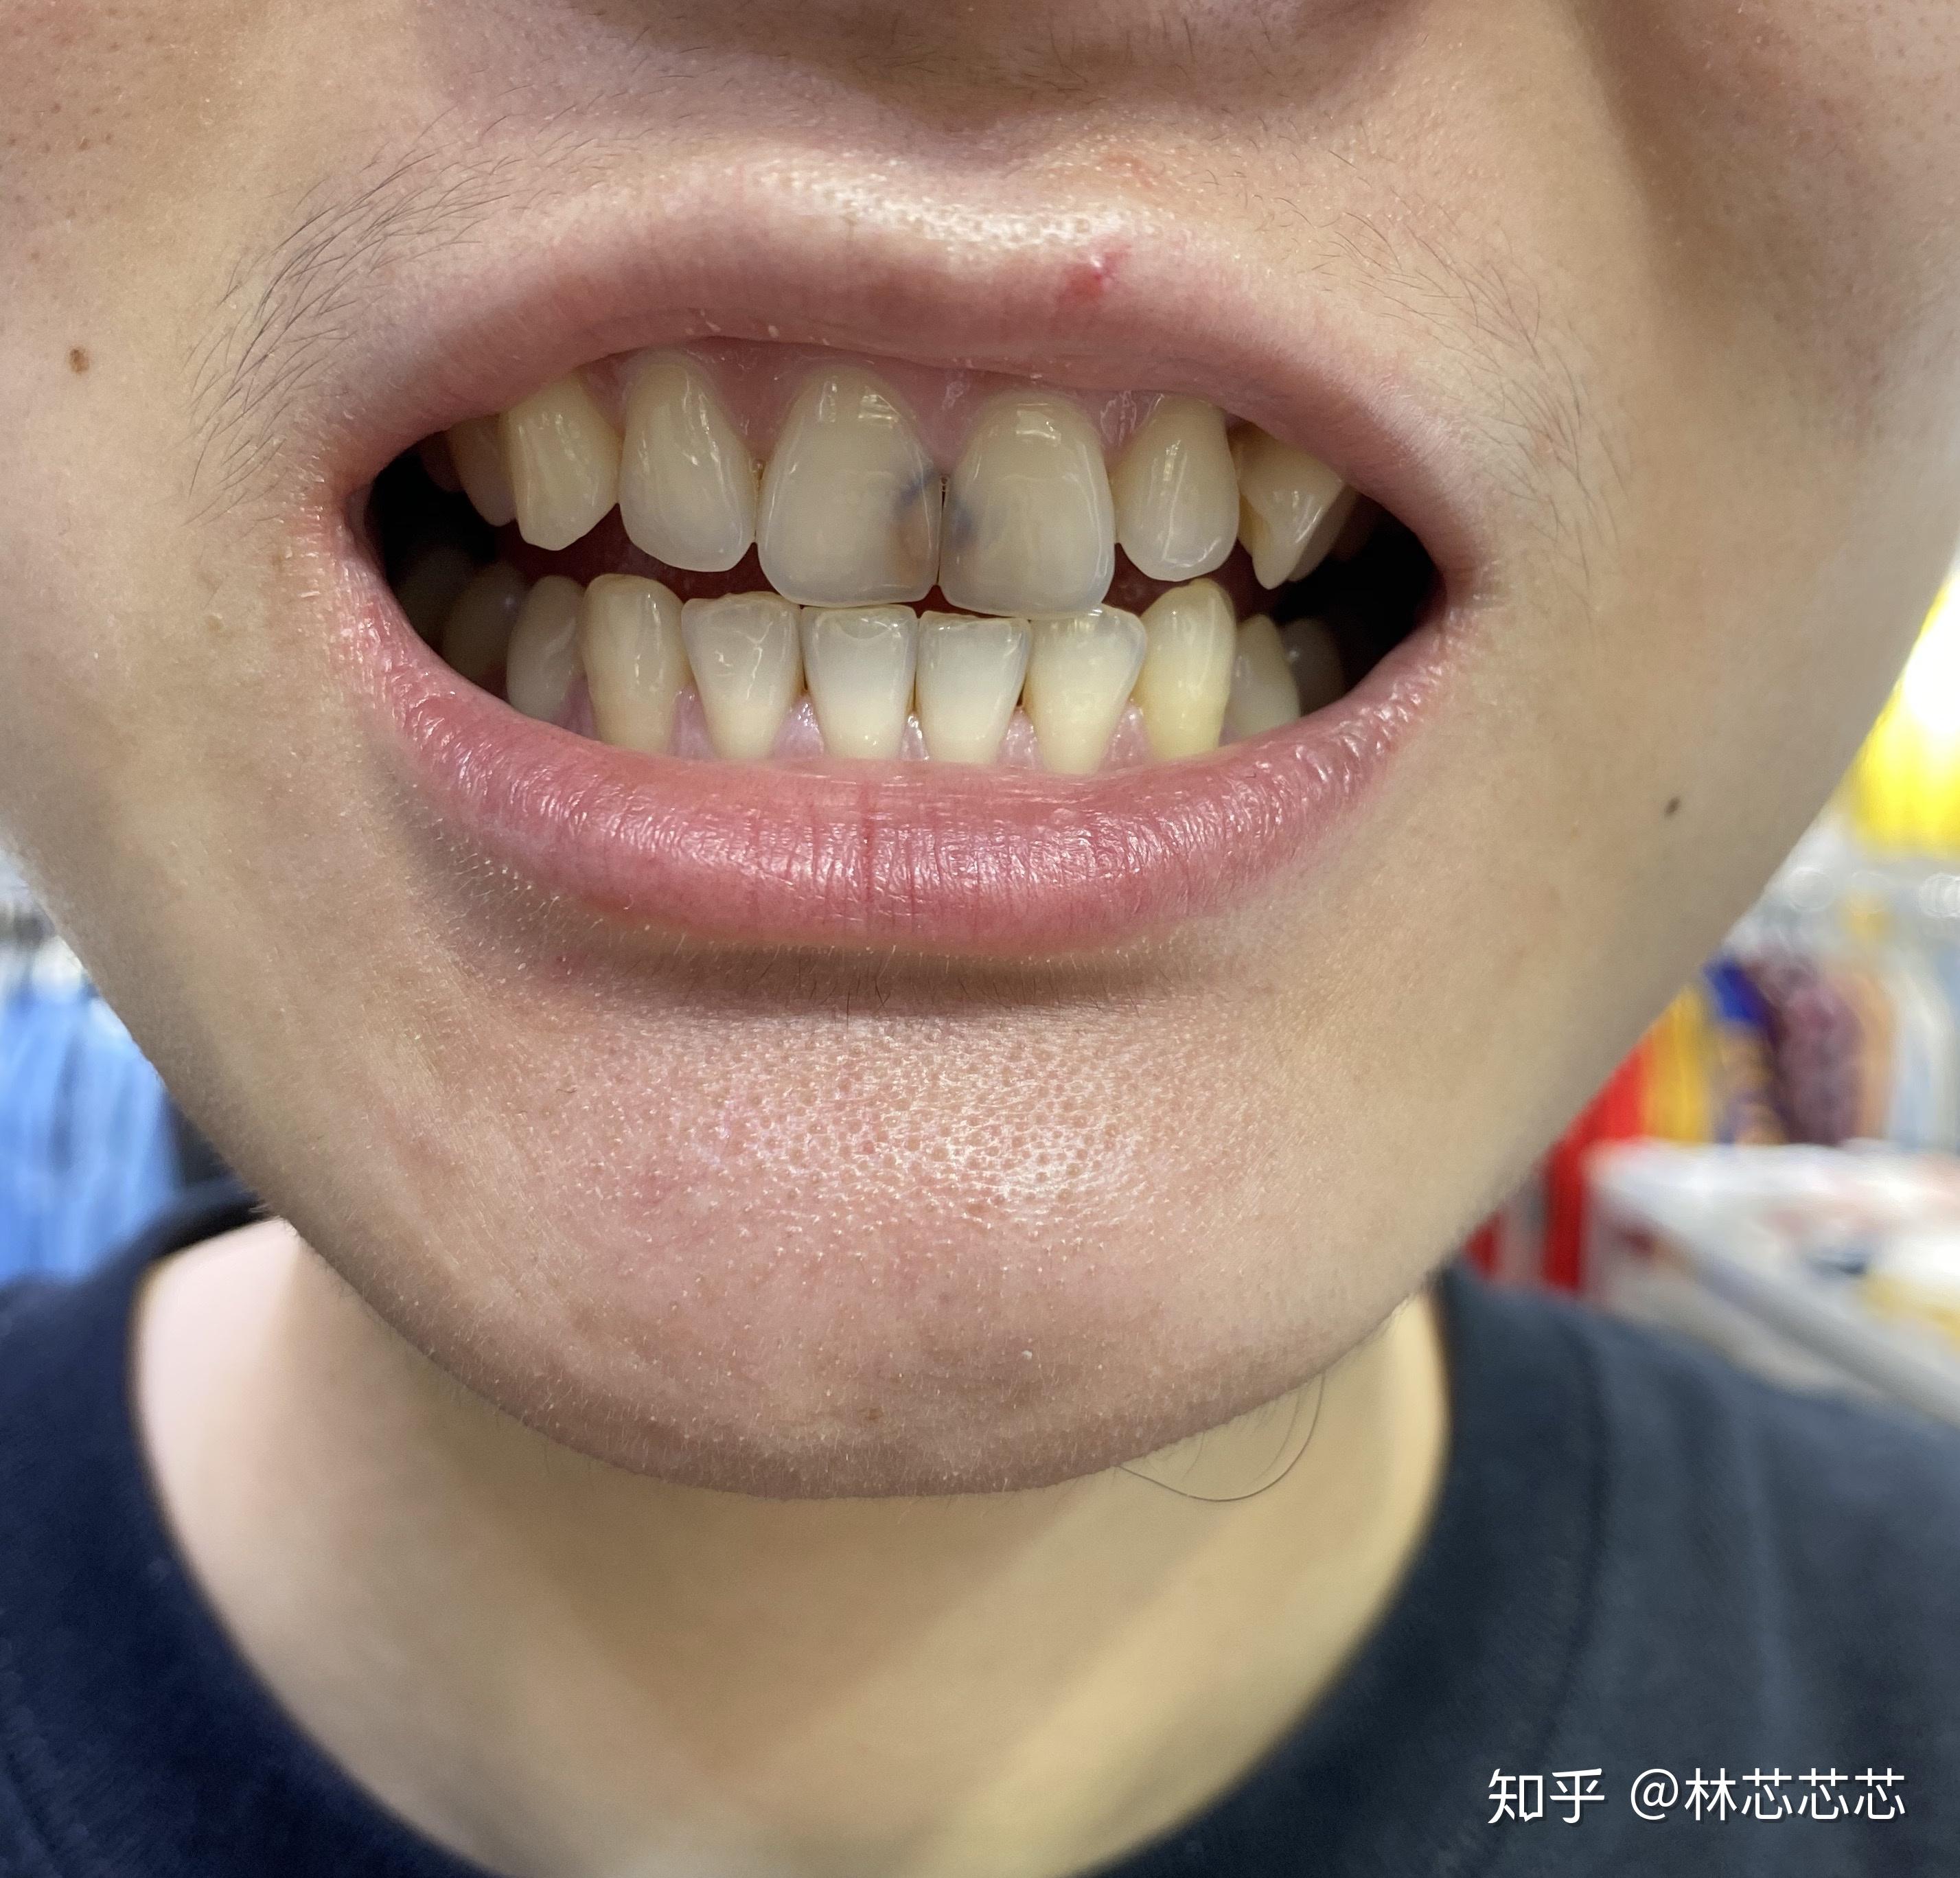 牙齿,以为要洗牙,各种紧张……医生随意检查过后,直接拿着钻子钻洞洞